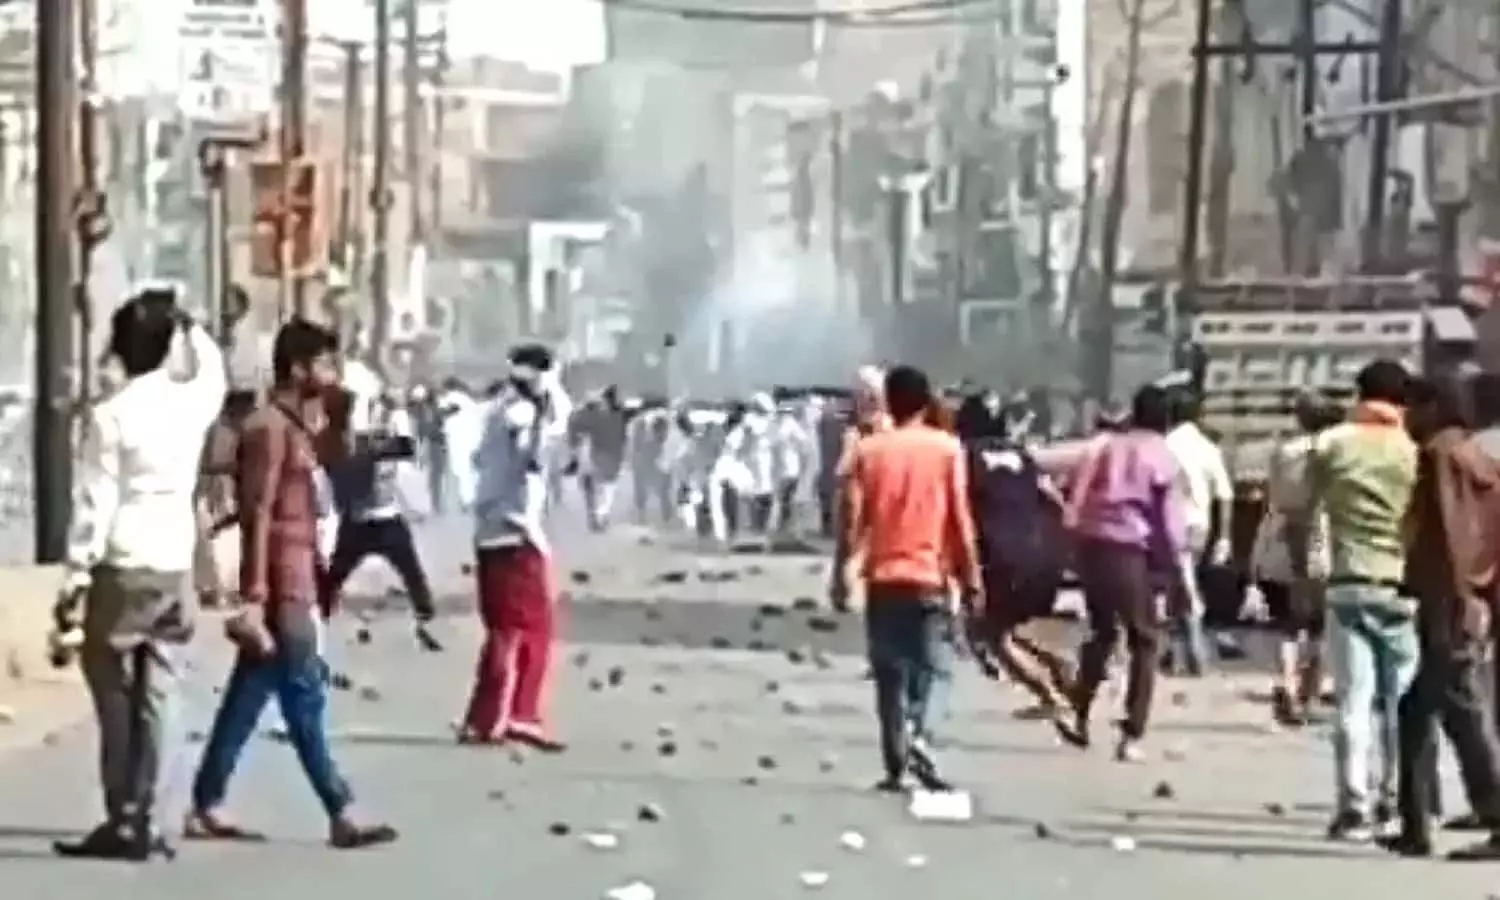 Kanpur Breaking News: यूपी के कानपुर में दो समुदायों के बीच हिंसा, जमकर चले पेट्रोल बम और पत्थर